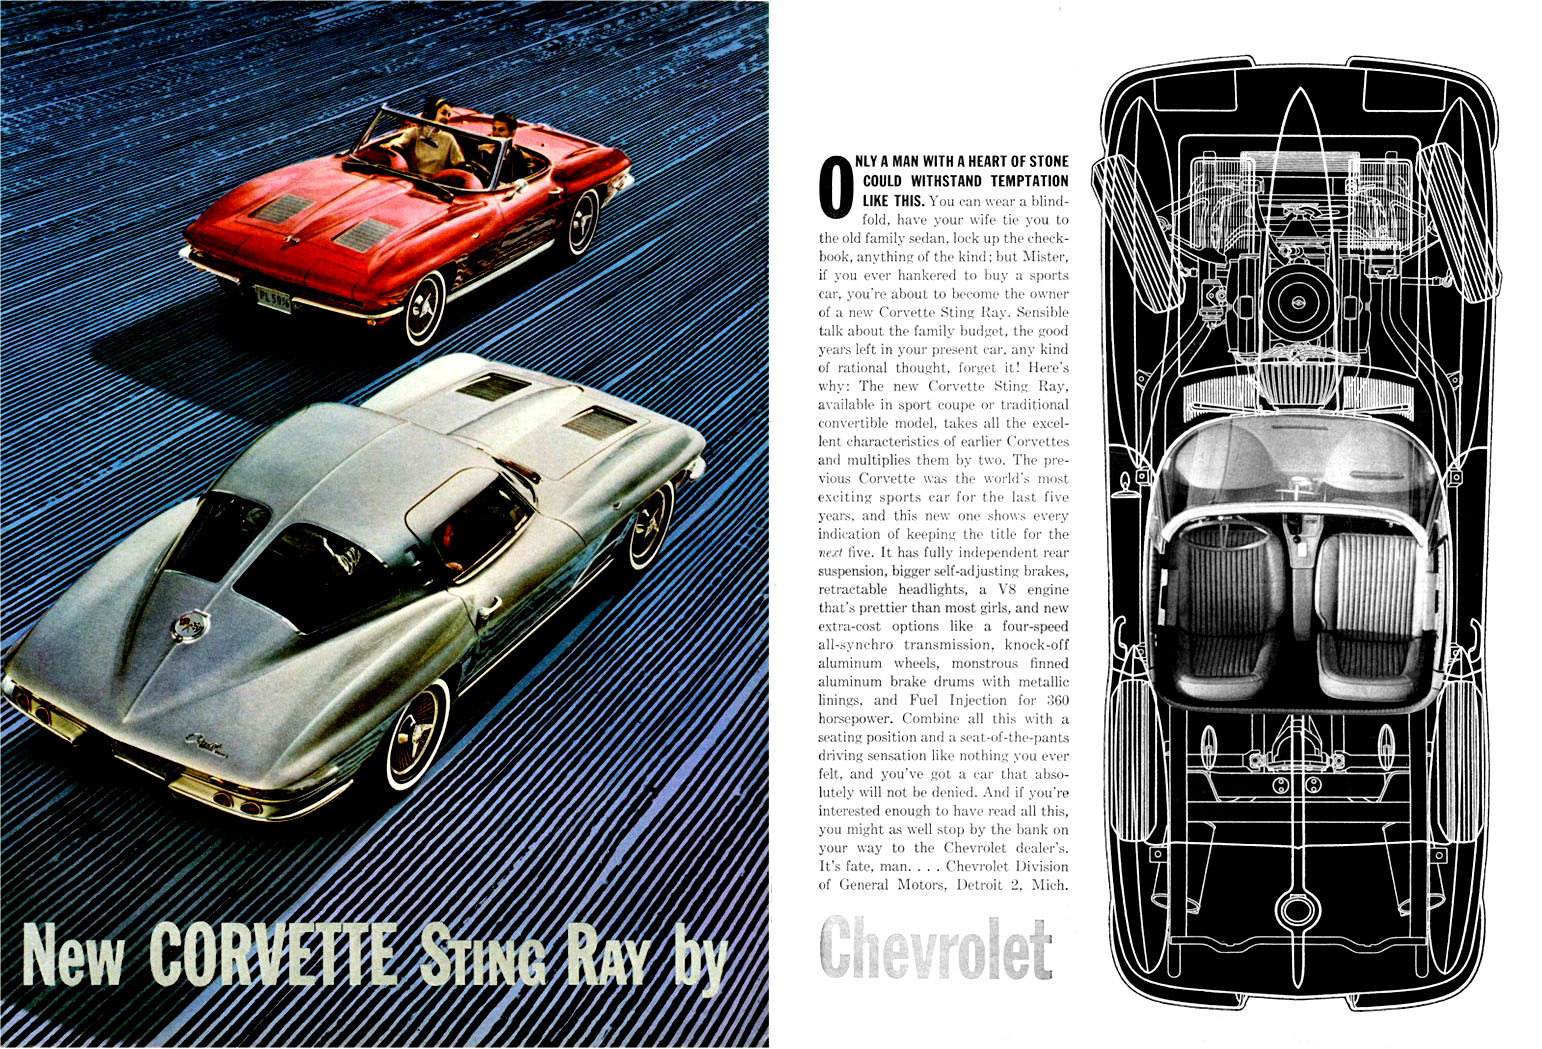 1963 Chevrolet Corvette Advertising